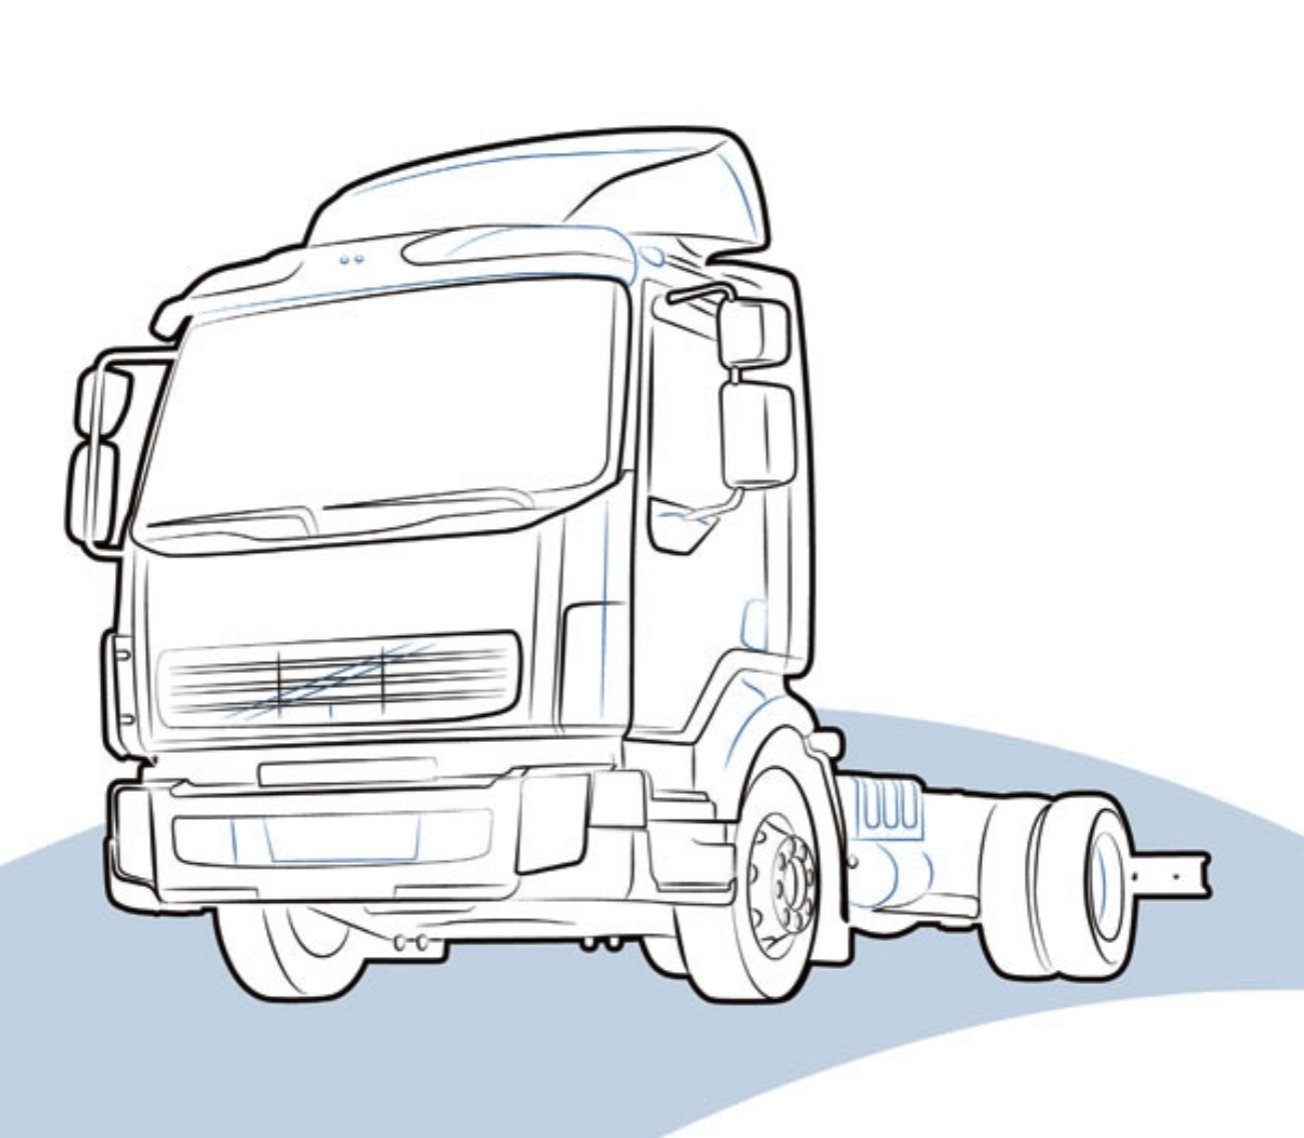 SUPPORTO FARO DX DAF LF - 1400505 - Carrozzeria Truck